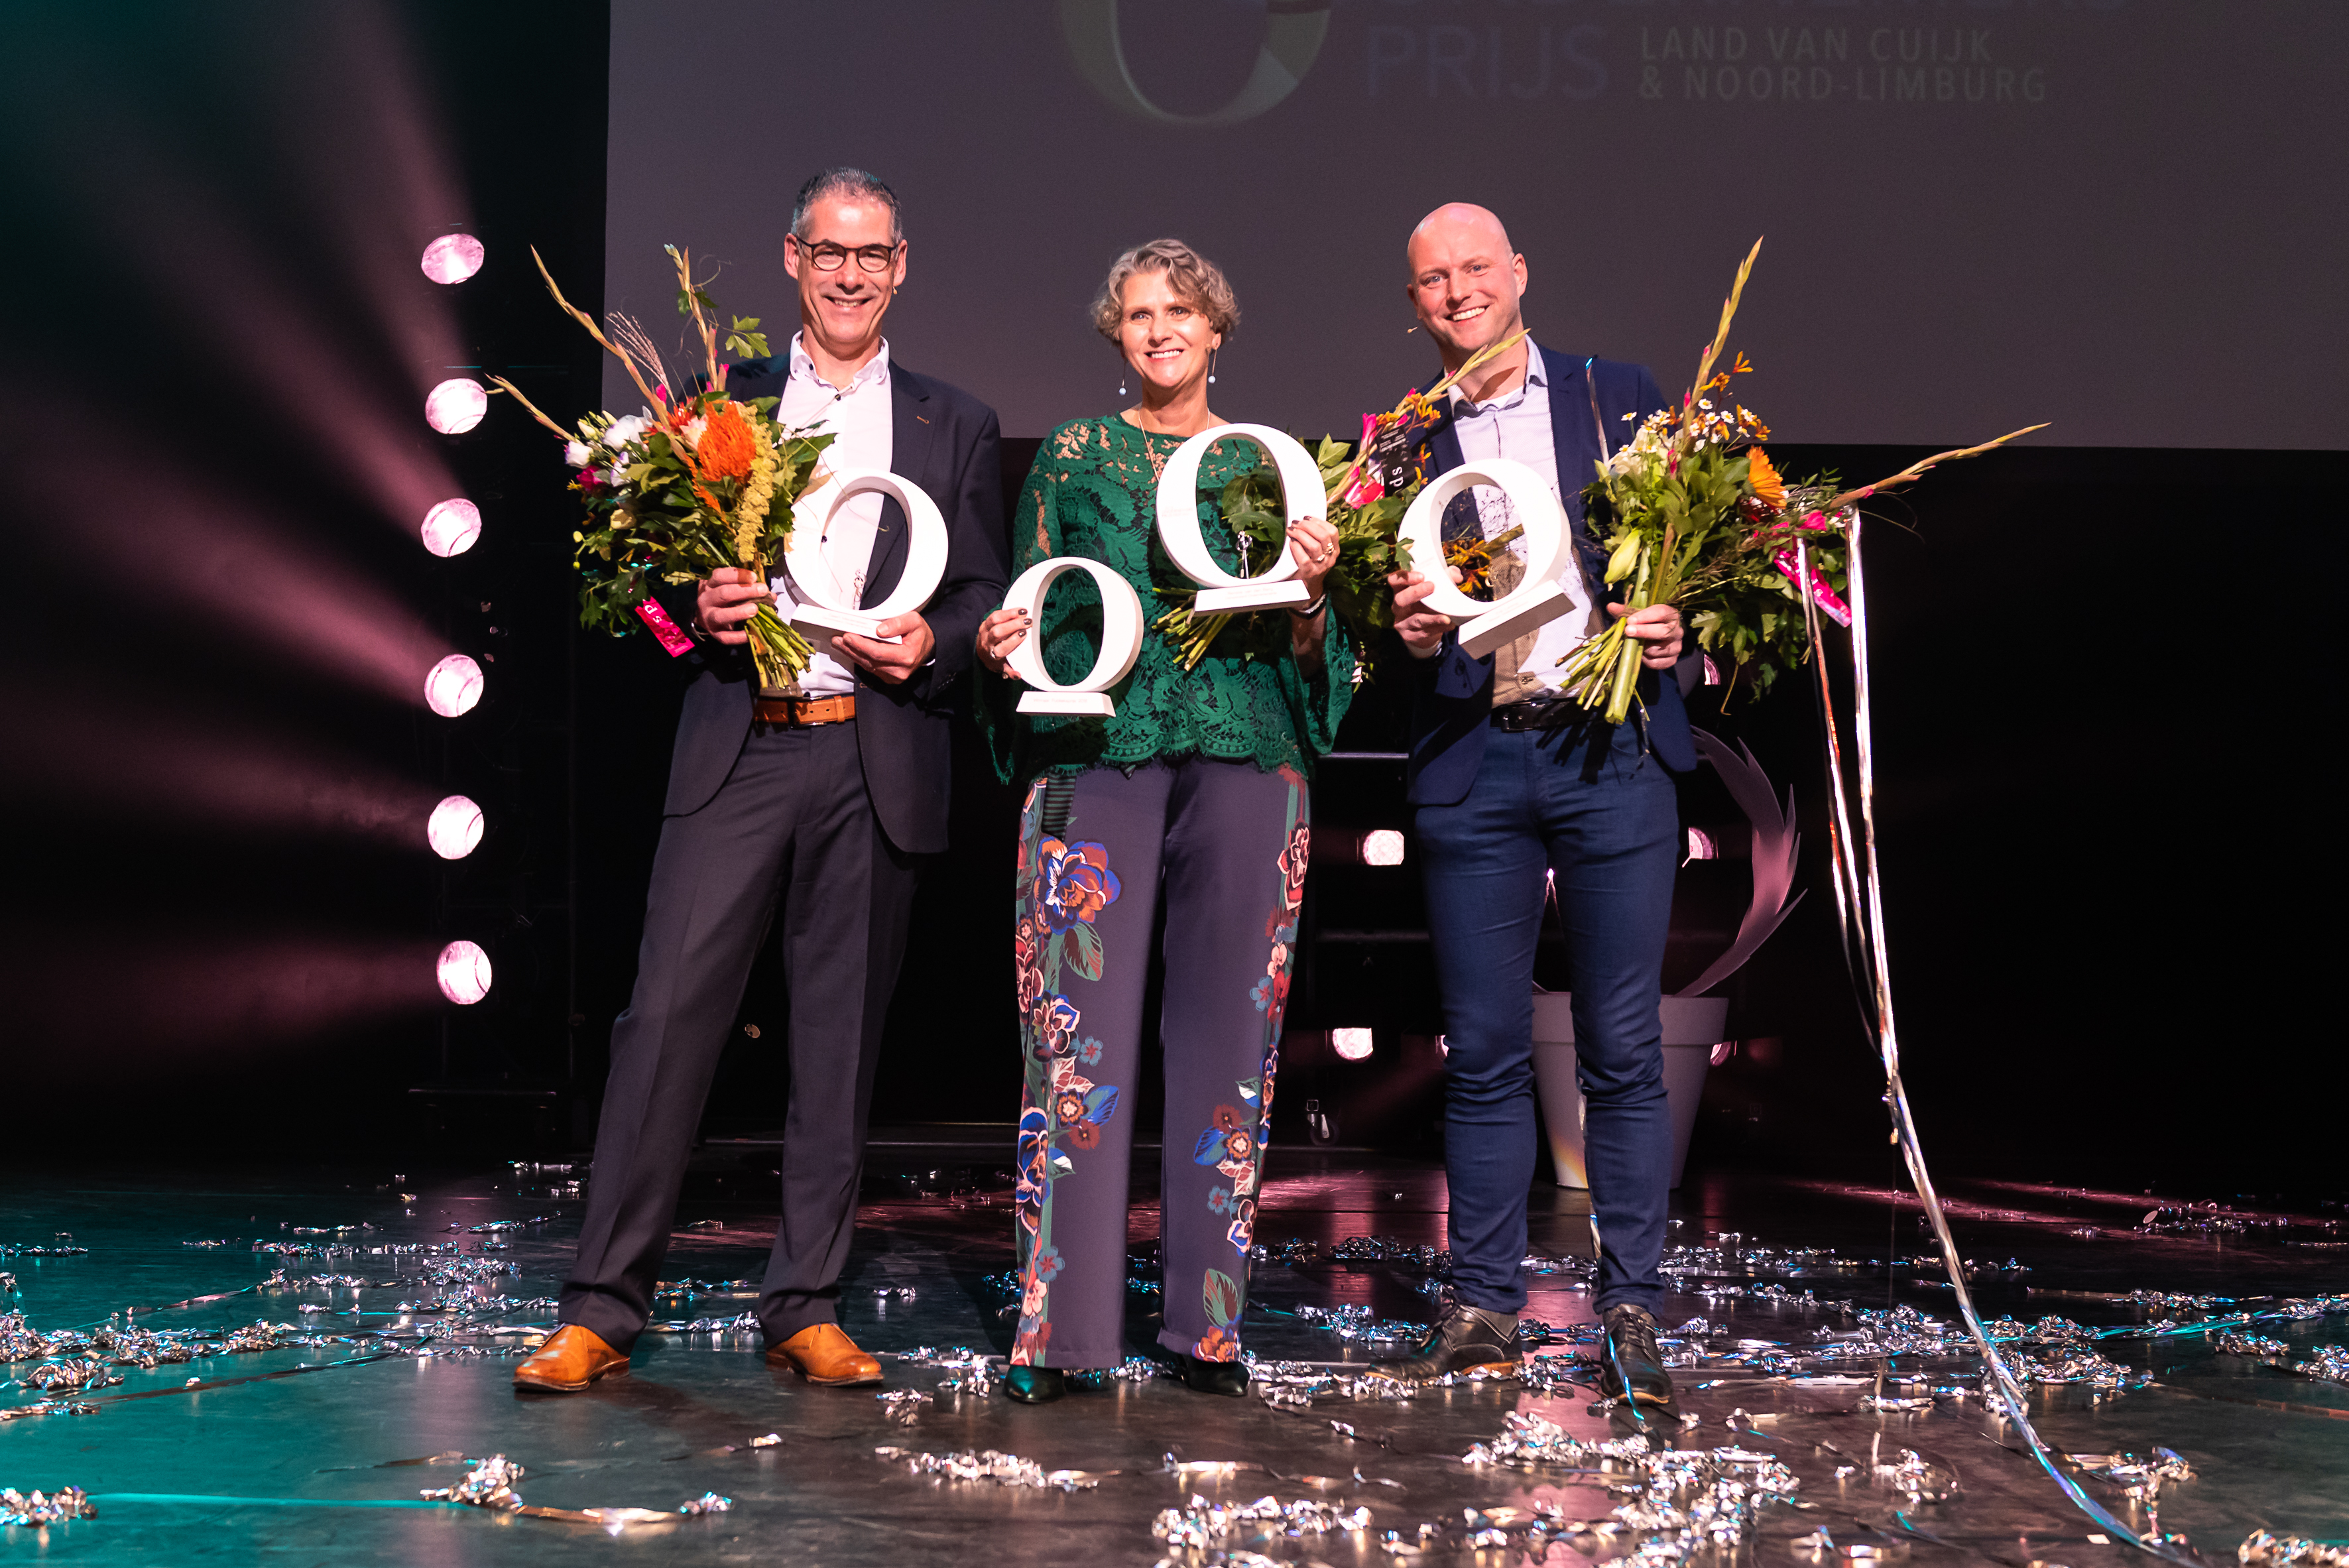 Erik Lanting wint de Ondernemersprijs Land van Cuijk & Noord-Limburg 2018